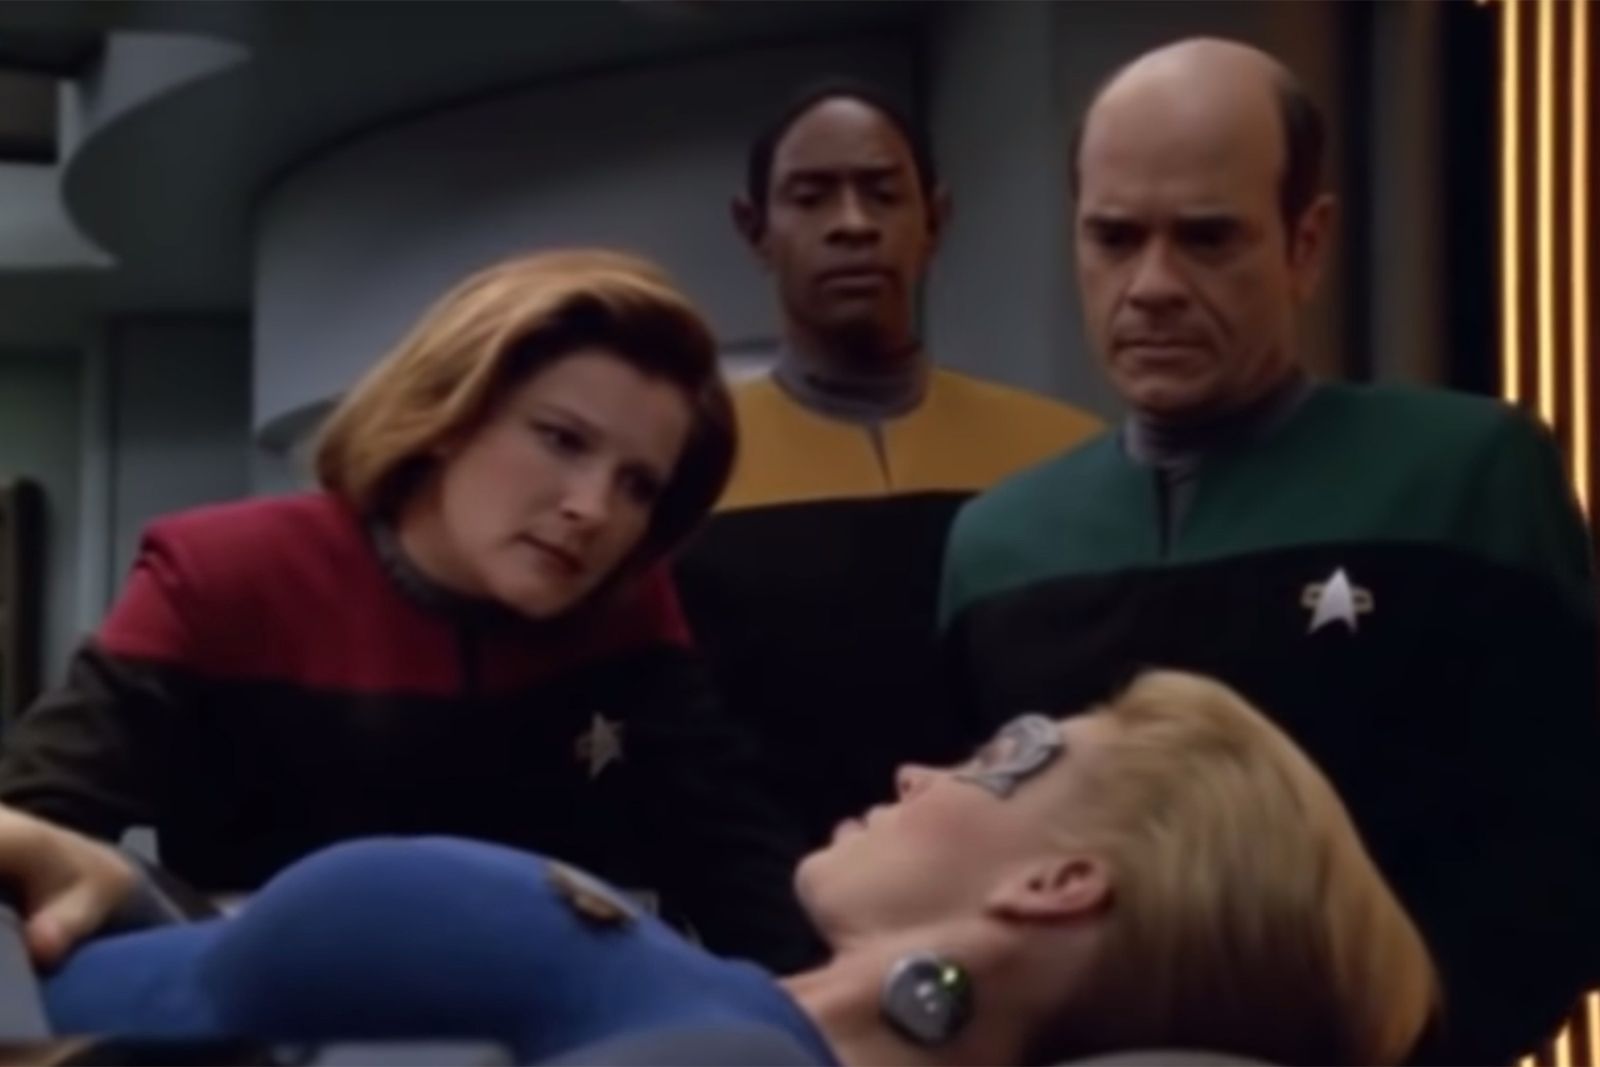 Star Trek': en qué orden ver todas las series y películas de la